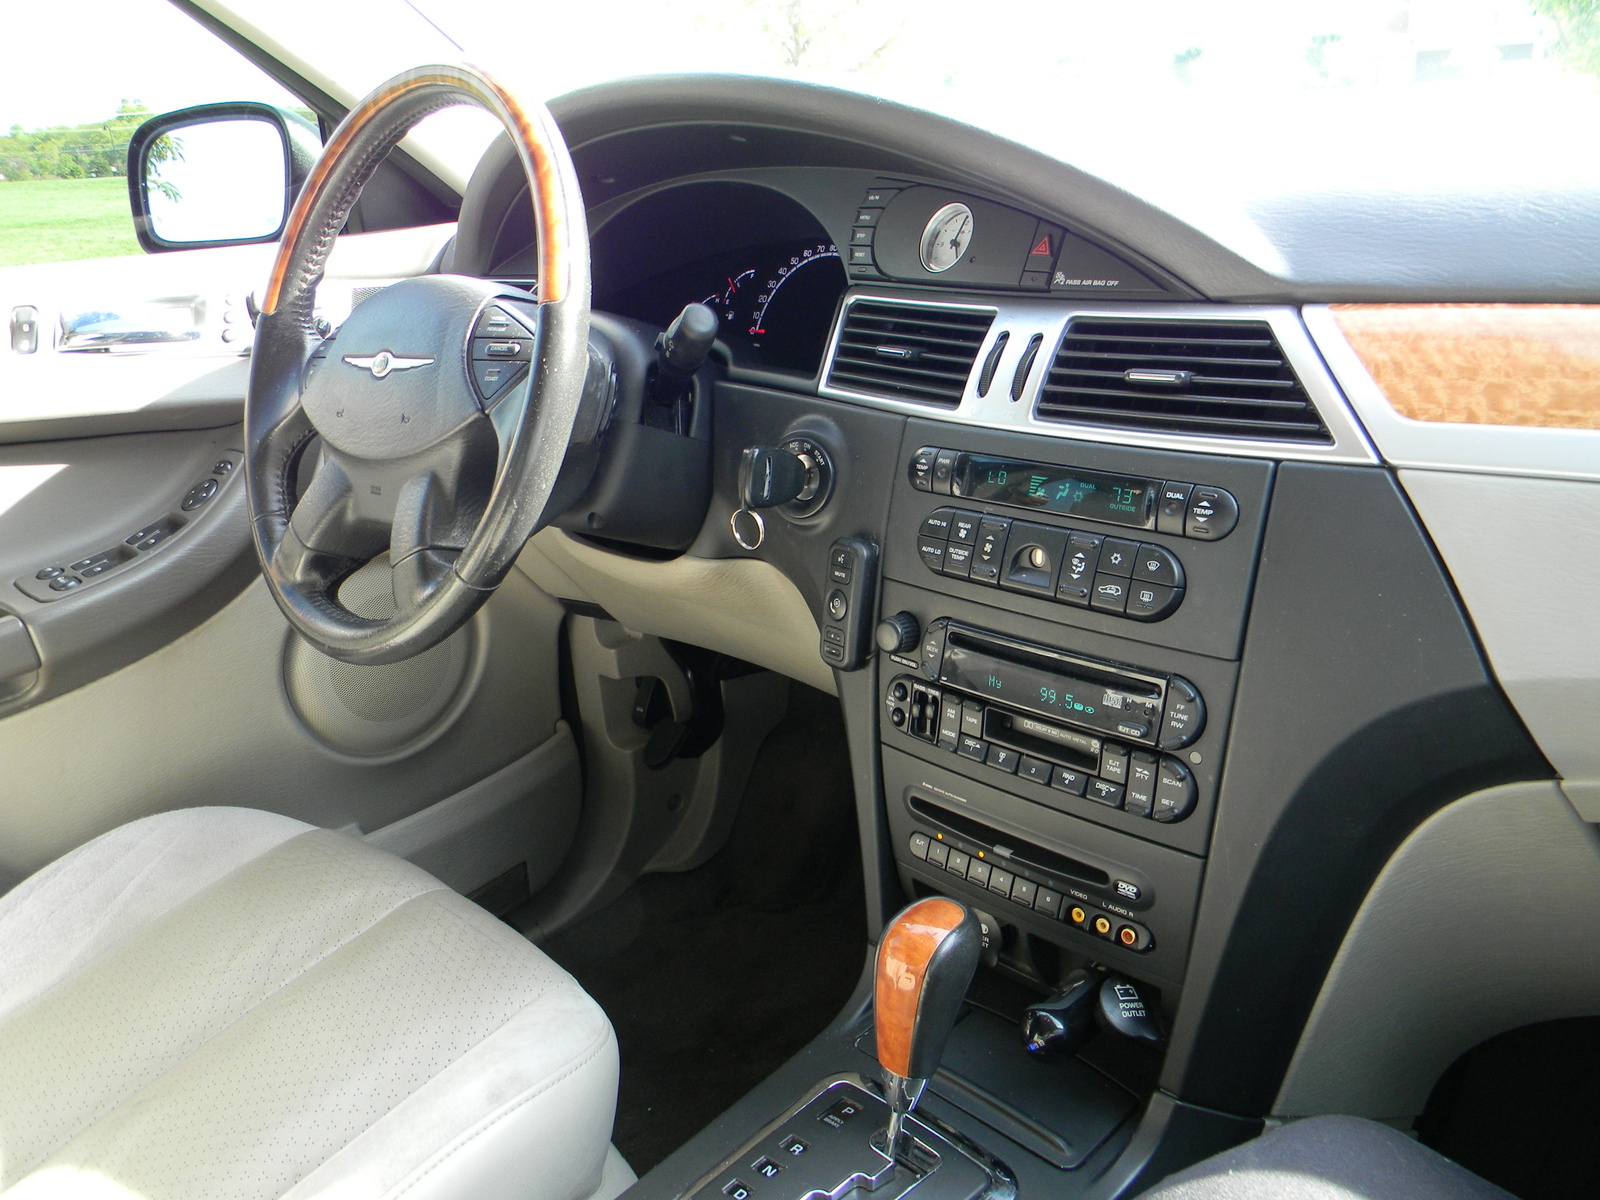 2006 Chrysler pacifica interior #1